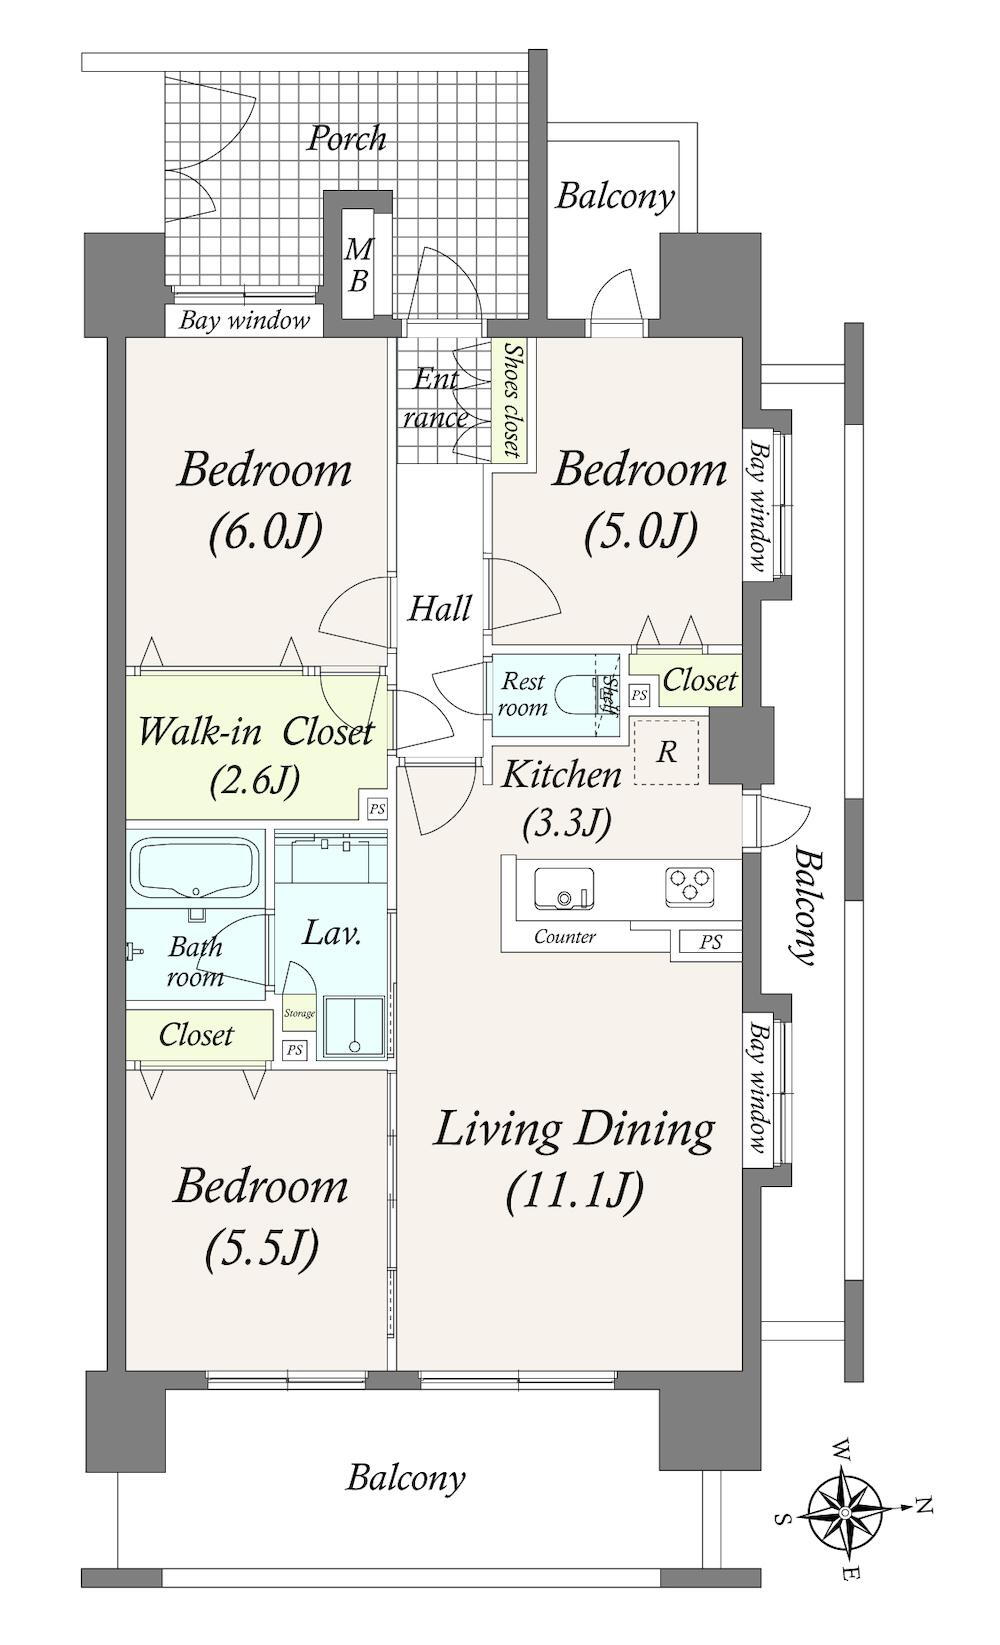 クレストガーデンレジデンス 3LDK、価格5680万円、専有面積70.06m<sup>2</sup>、バルコニー面積24.8m<sup>2</sup> 高層階・角住戸ならではの開放感を感じられる住戸です。また、廊下部分の面積が少ないため、その分居室に広がりがあります。